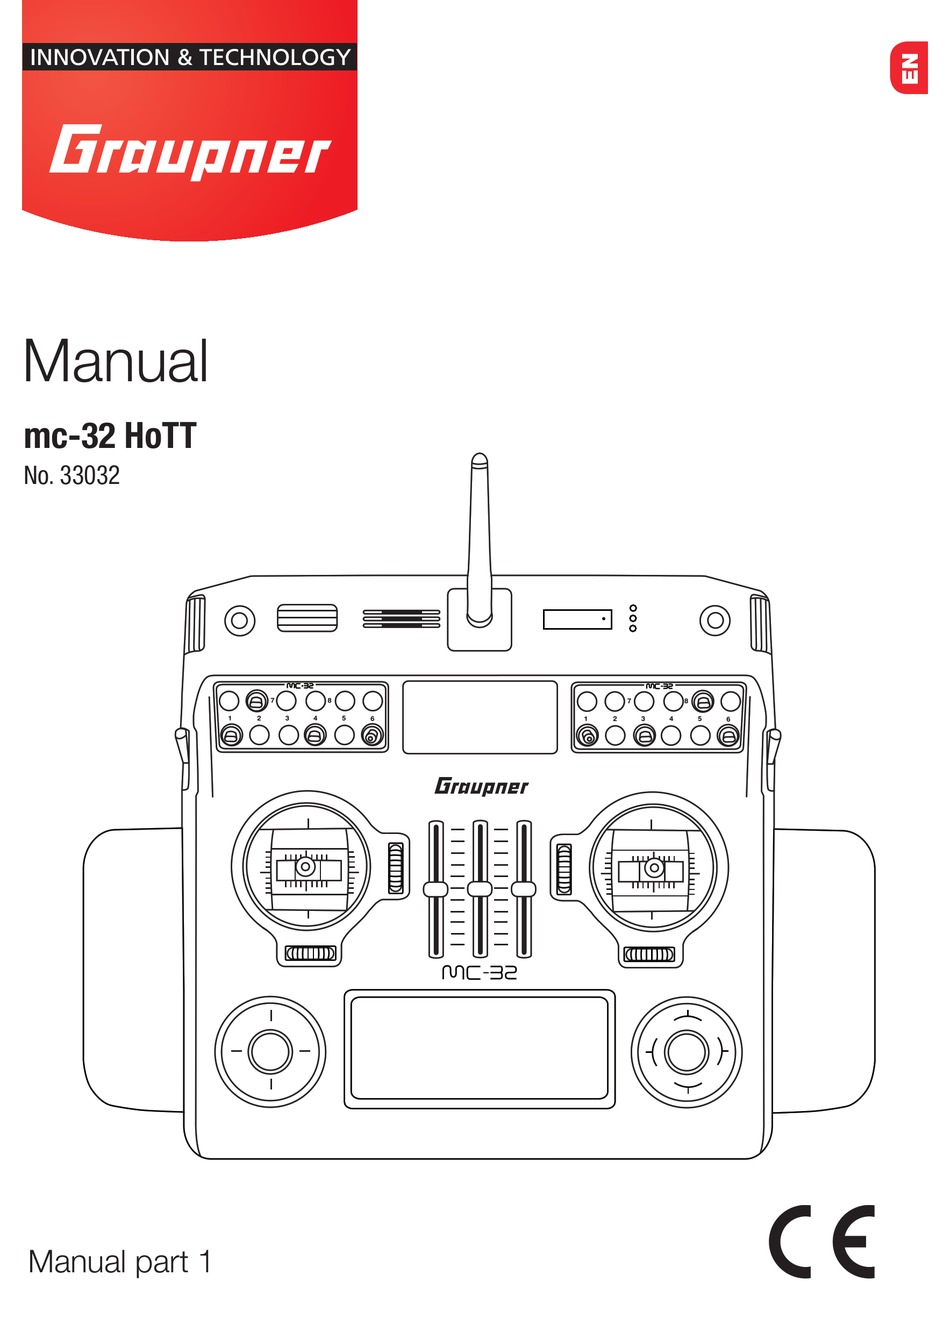 Graupner Ultramat 16 Manual